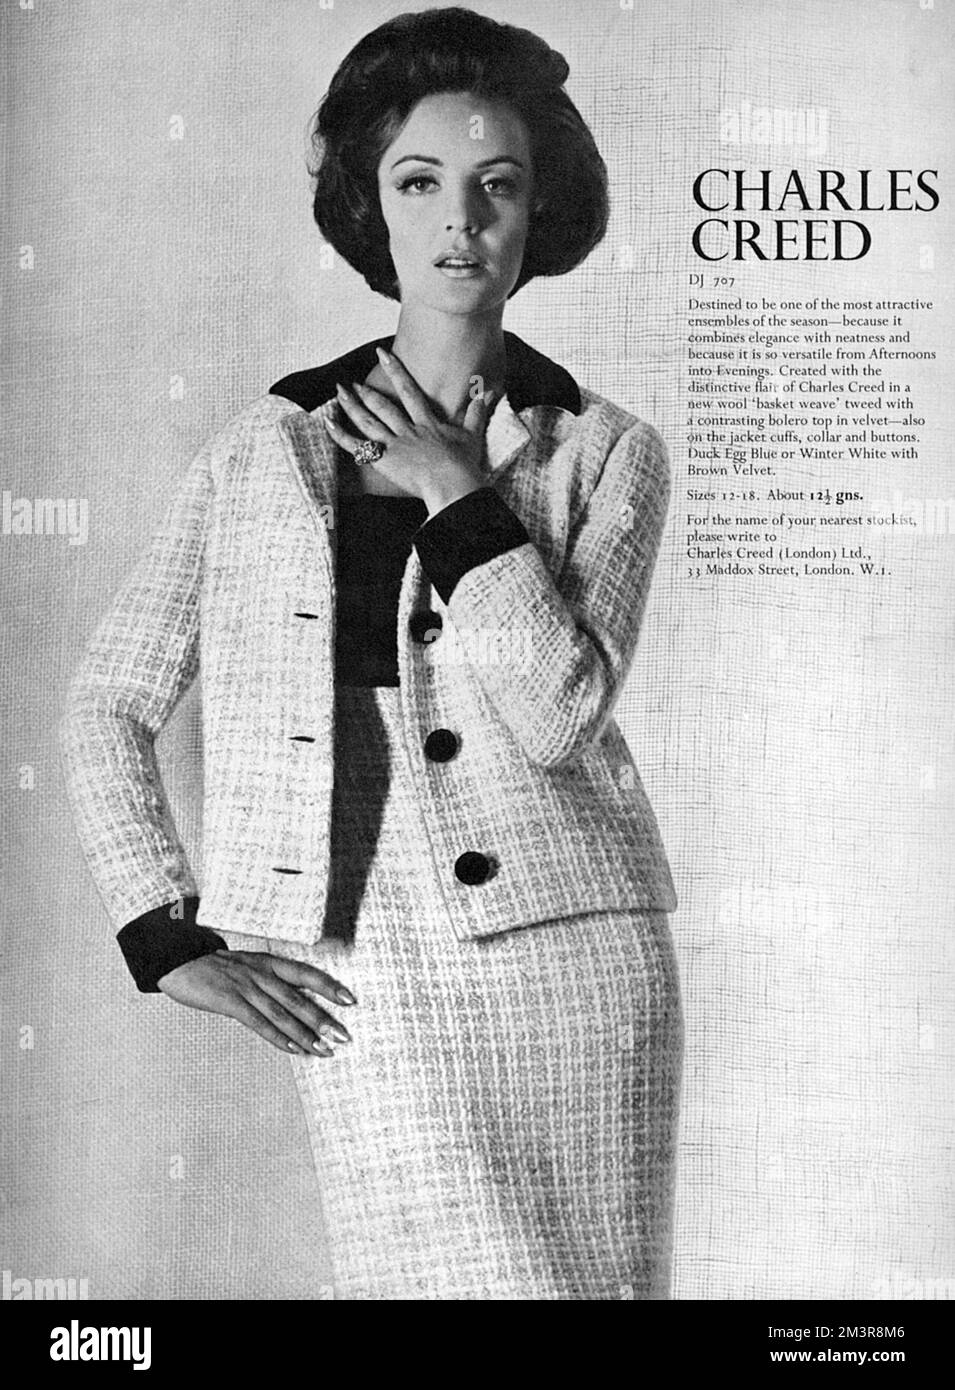 Publicité pour Charles Creed et un costume dans un panier tissé laine tweed avec un haut de boléro contrasté en velours avec la bordure répétée sur le col de la veste et les poignets. Date: 1965 Banque D'Images